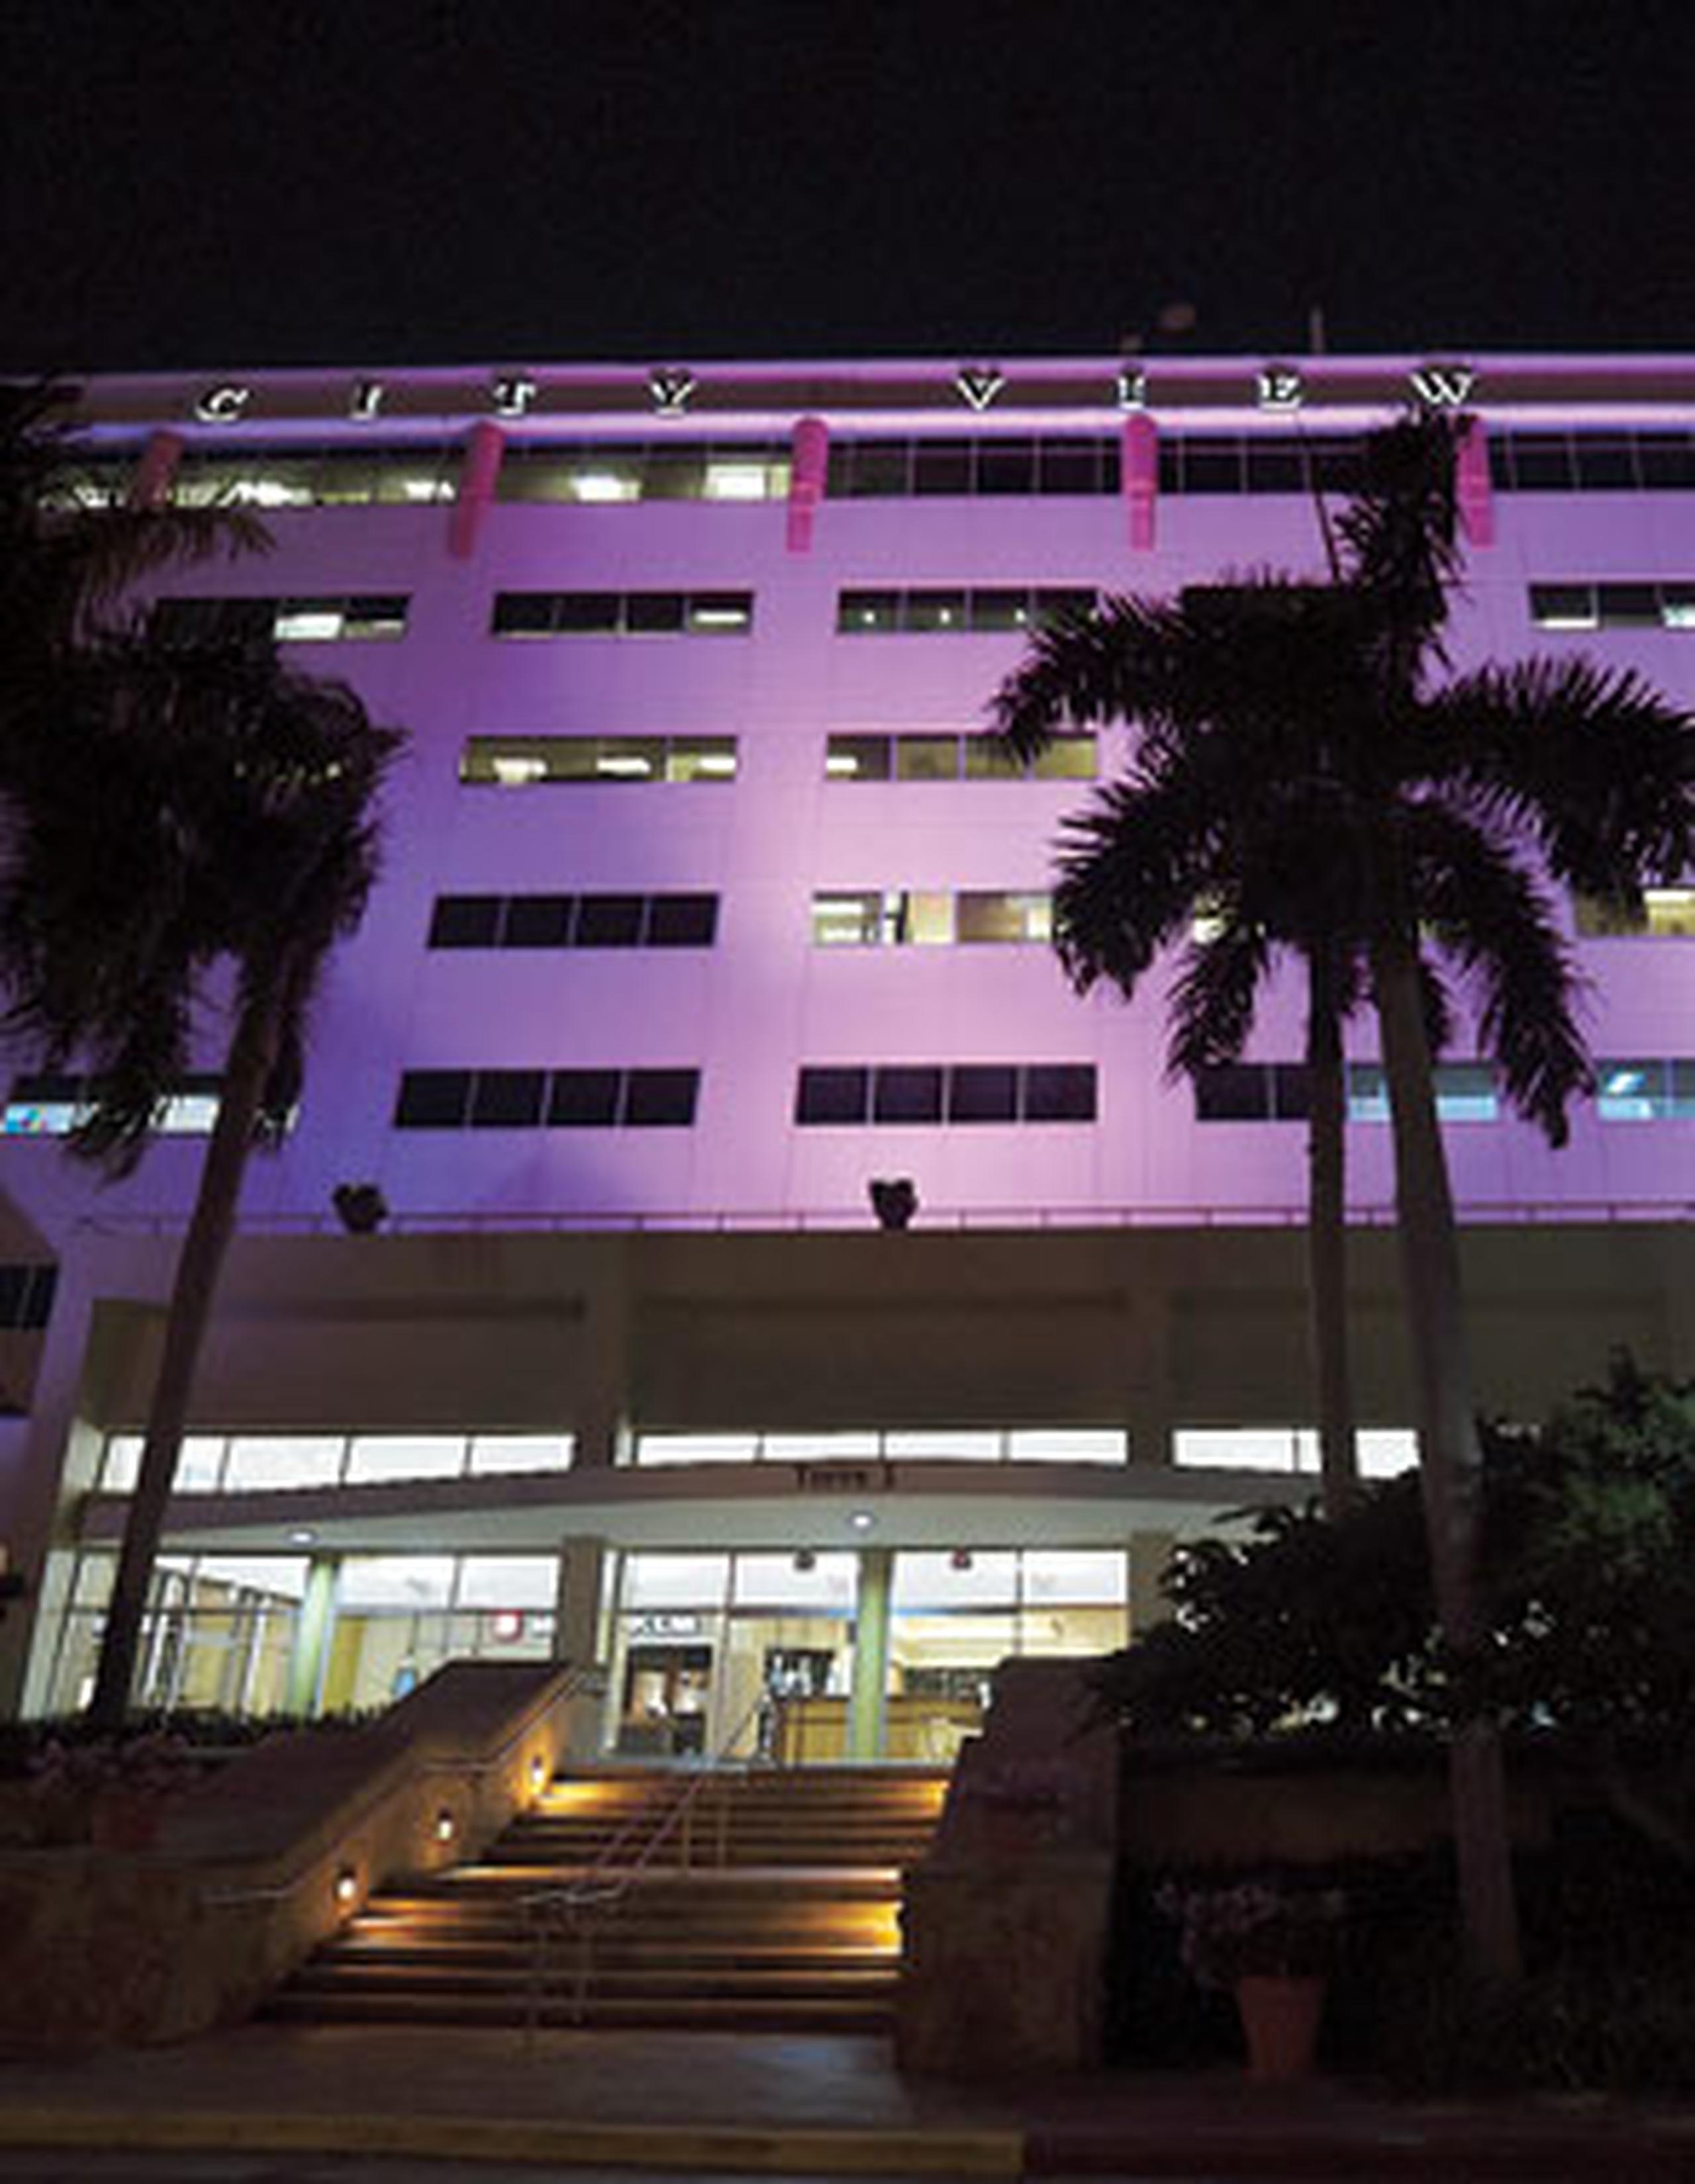 La iluminación de edificios claves sirve como un recordatorio a las personas a hacerse su mamografía, indicó Sharon Tosas, de la Sociedad Americana Contra el Cáncer. (andre.kang@gfrmadia.com)